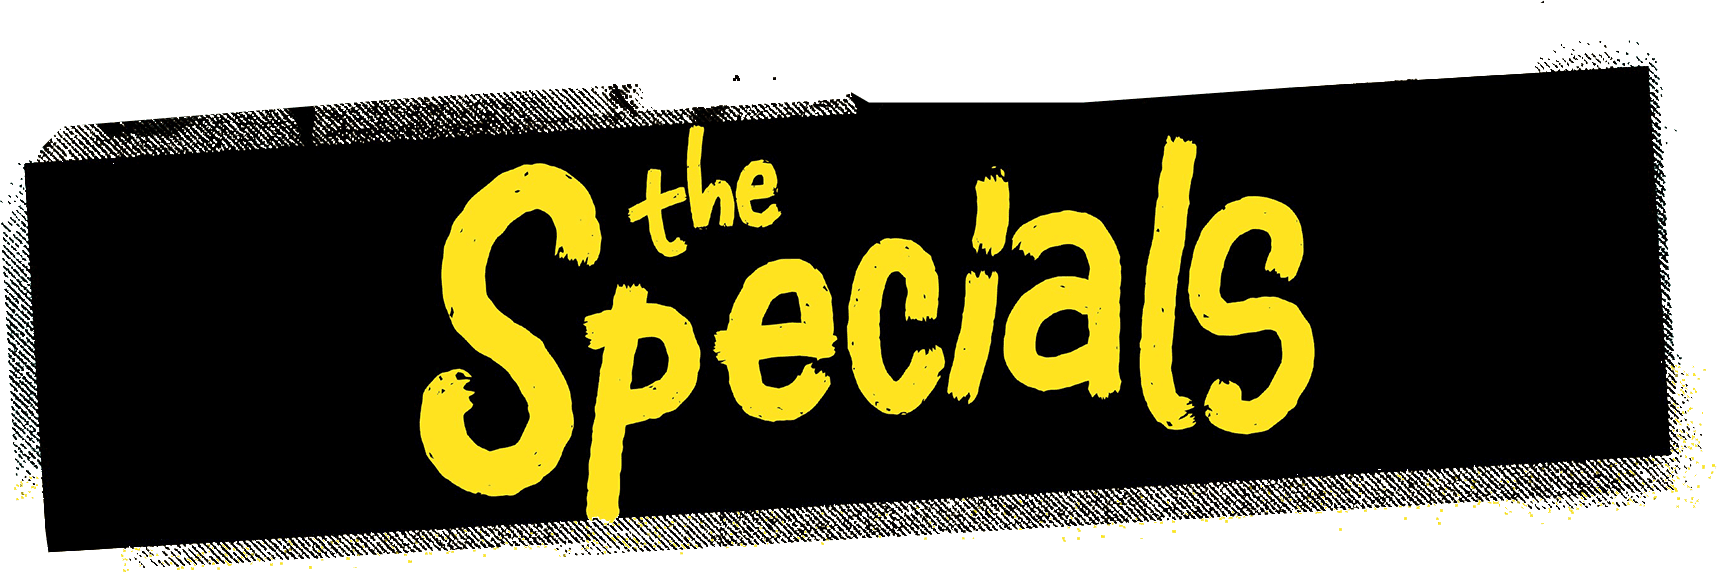 TheSpecials_logo.png